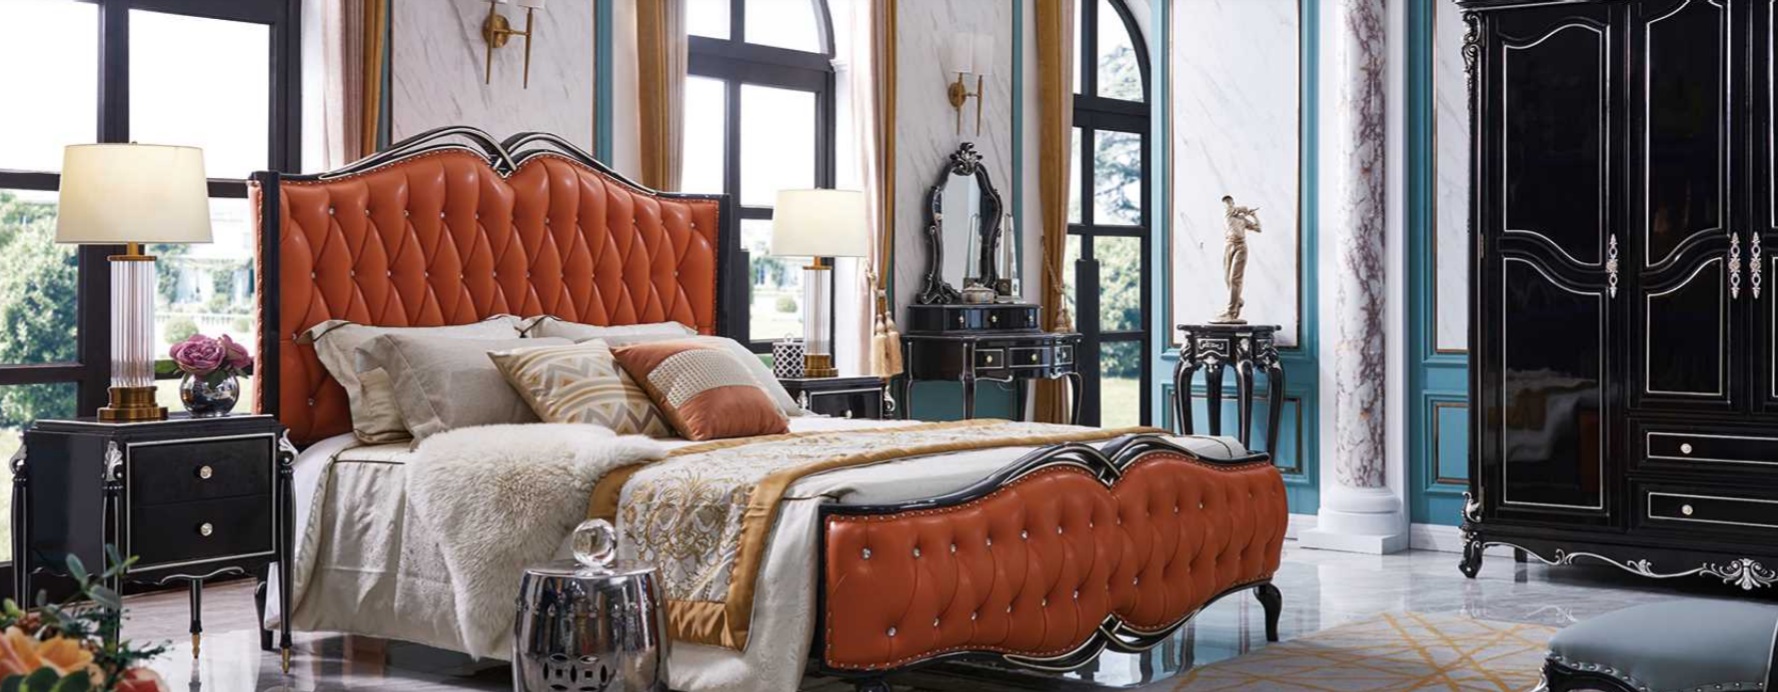 Klassisches Bett Luxus Betten Chesterfield Möbel Barock Hotel Leder Schlafzimmer